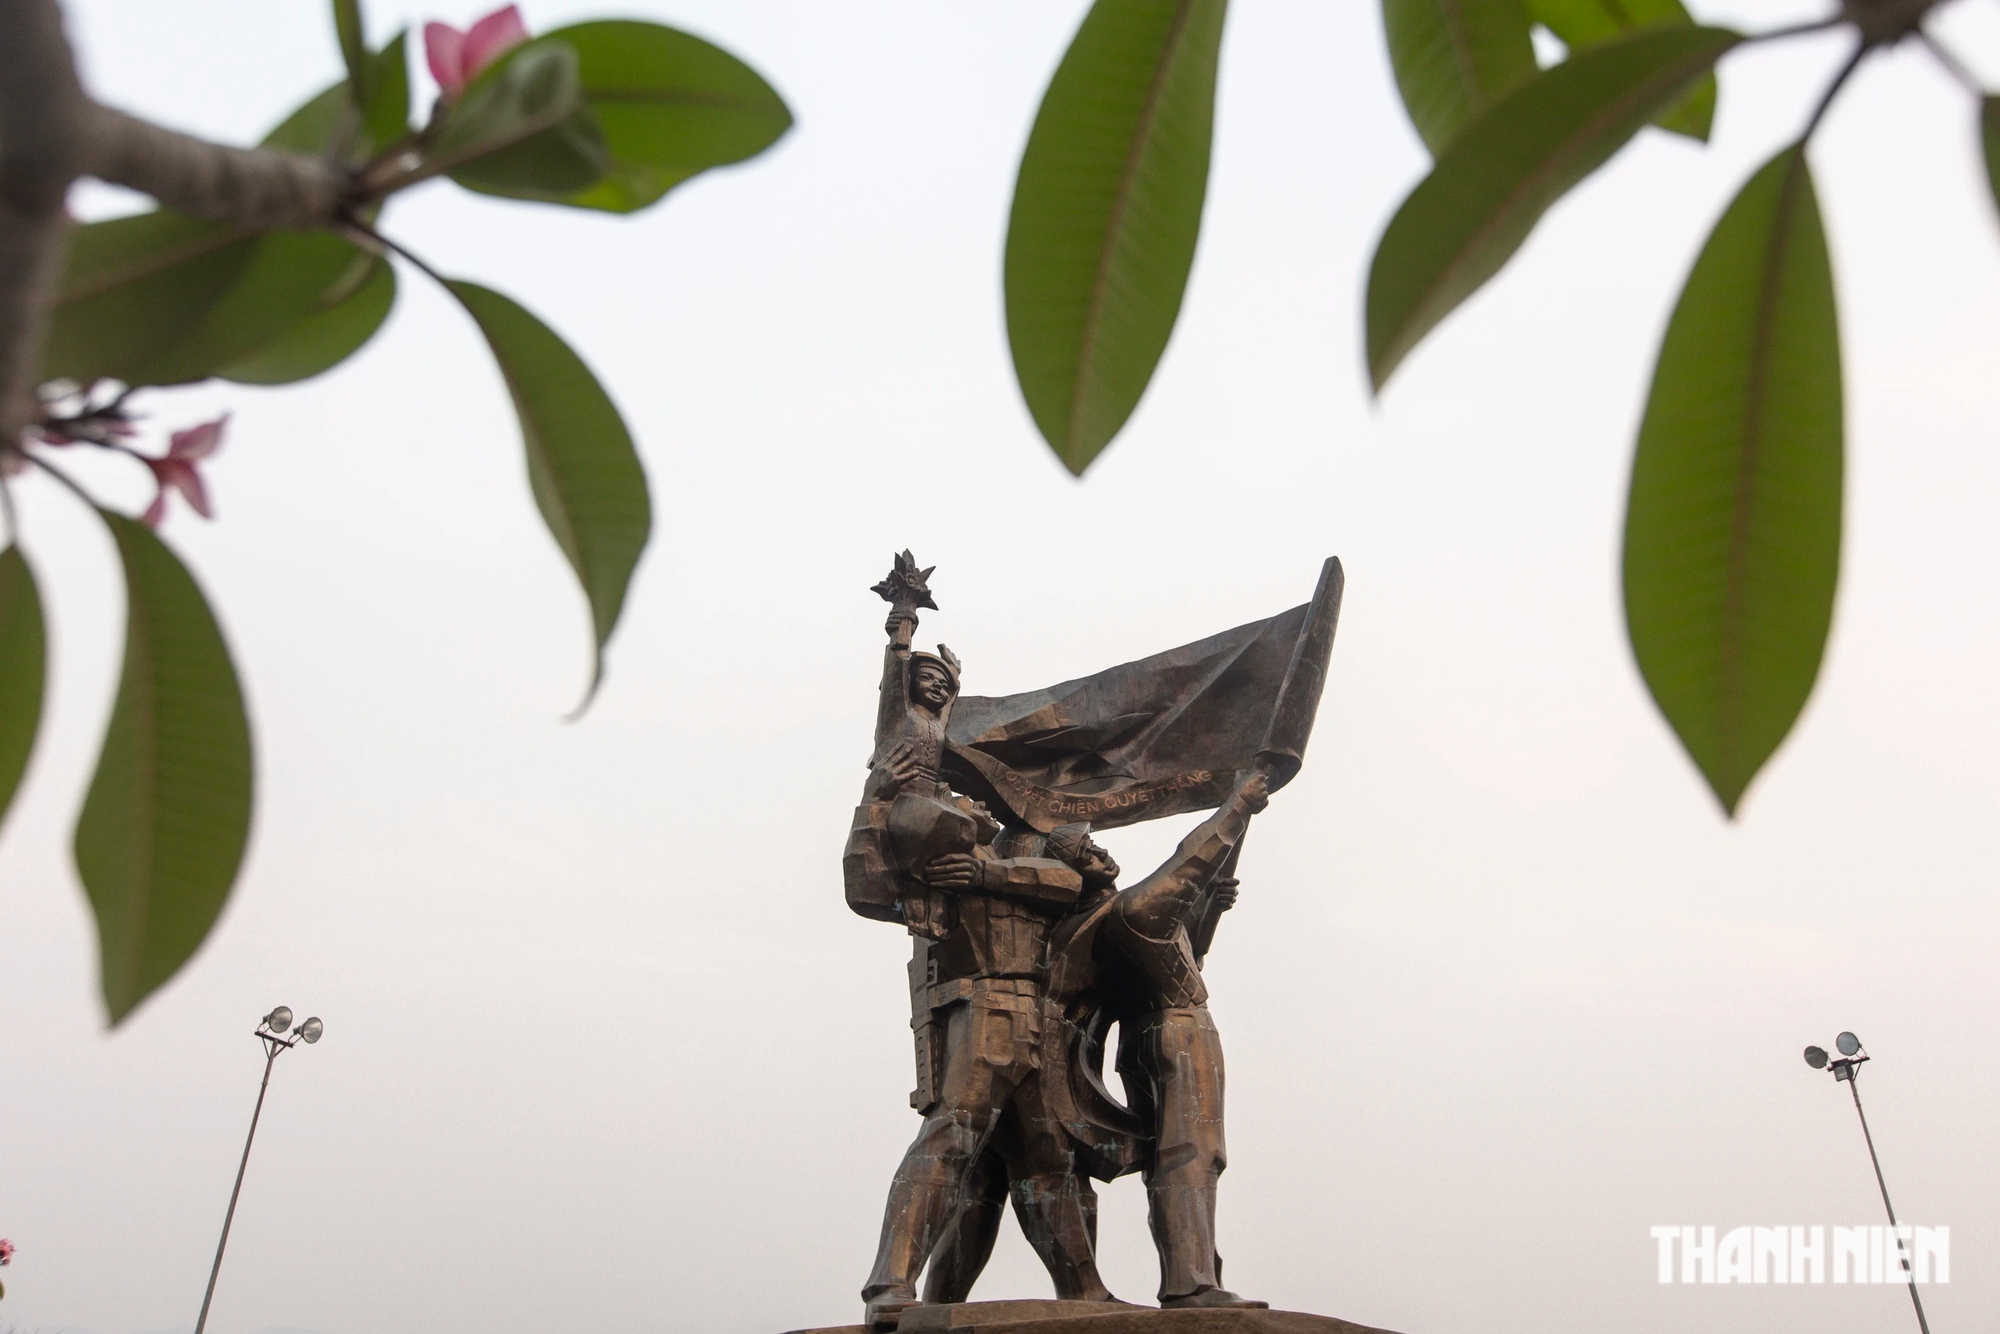 Tượng đài Chiến thắng Điện Biên Phủ là tượng đài bằng đồng lớn nhất Việt Nam hiện nay. Công trình được hoàn thành nhân kỷ niệm 50 năm chiến thắng Điện Biên Phủ (năm 2004). Hiện công trình là điểm tham quan không thể không đến của khách du lịch và người dân Điện Biên.